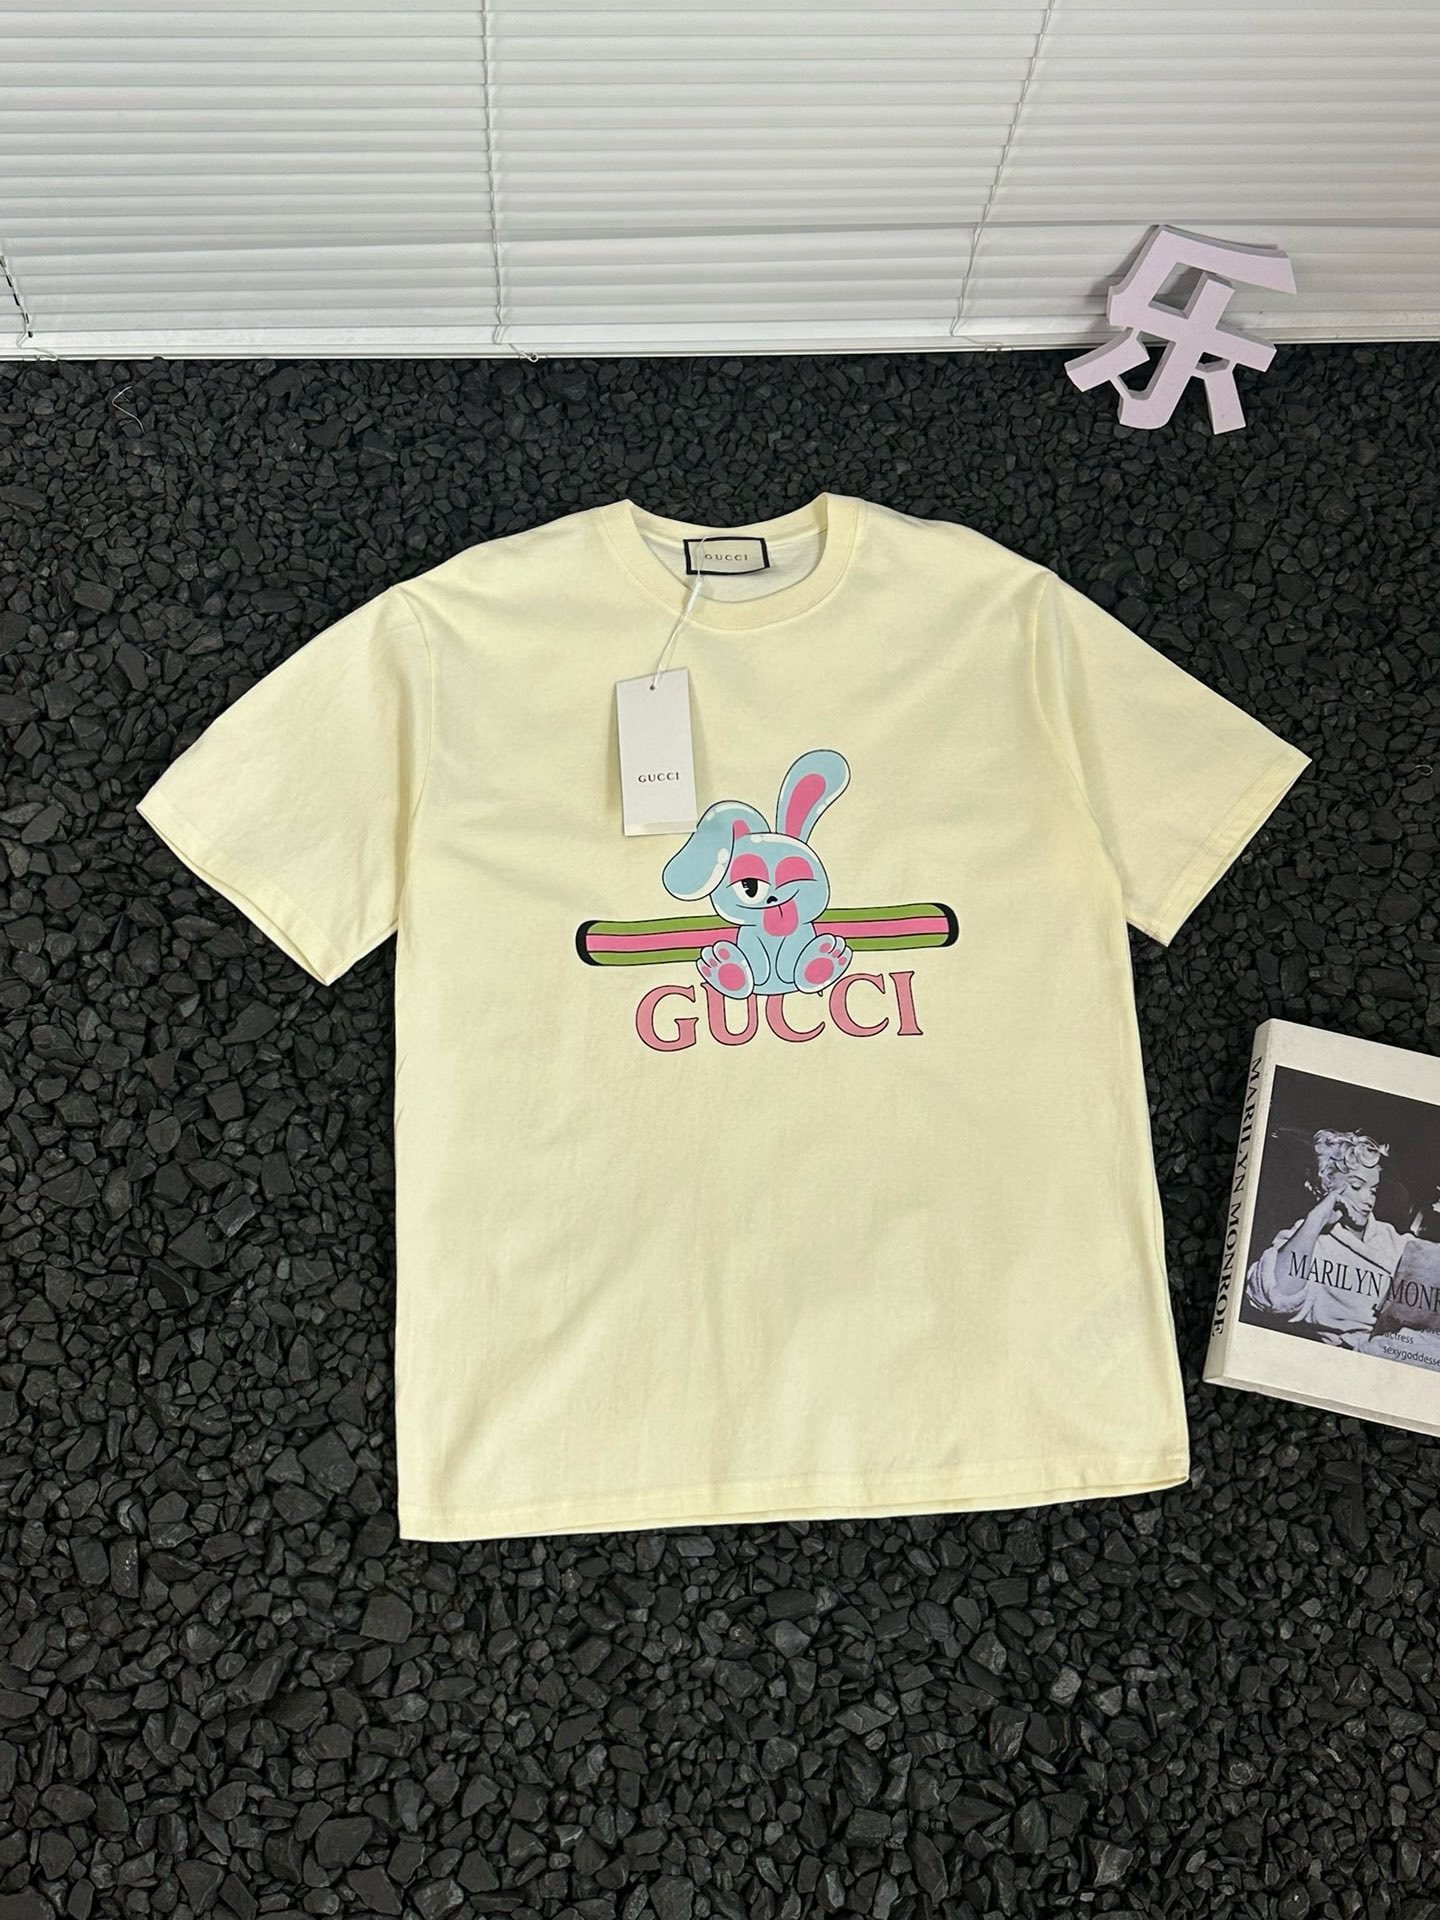 Gucci Kleidung T-Shirt Beige Weiß Drucken Unisex Baumwolle Sommerkollektion Kurzarm